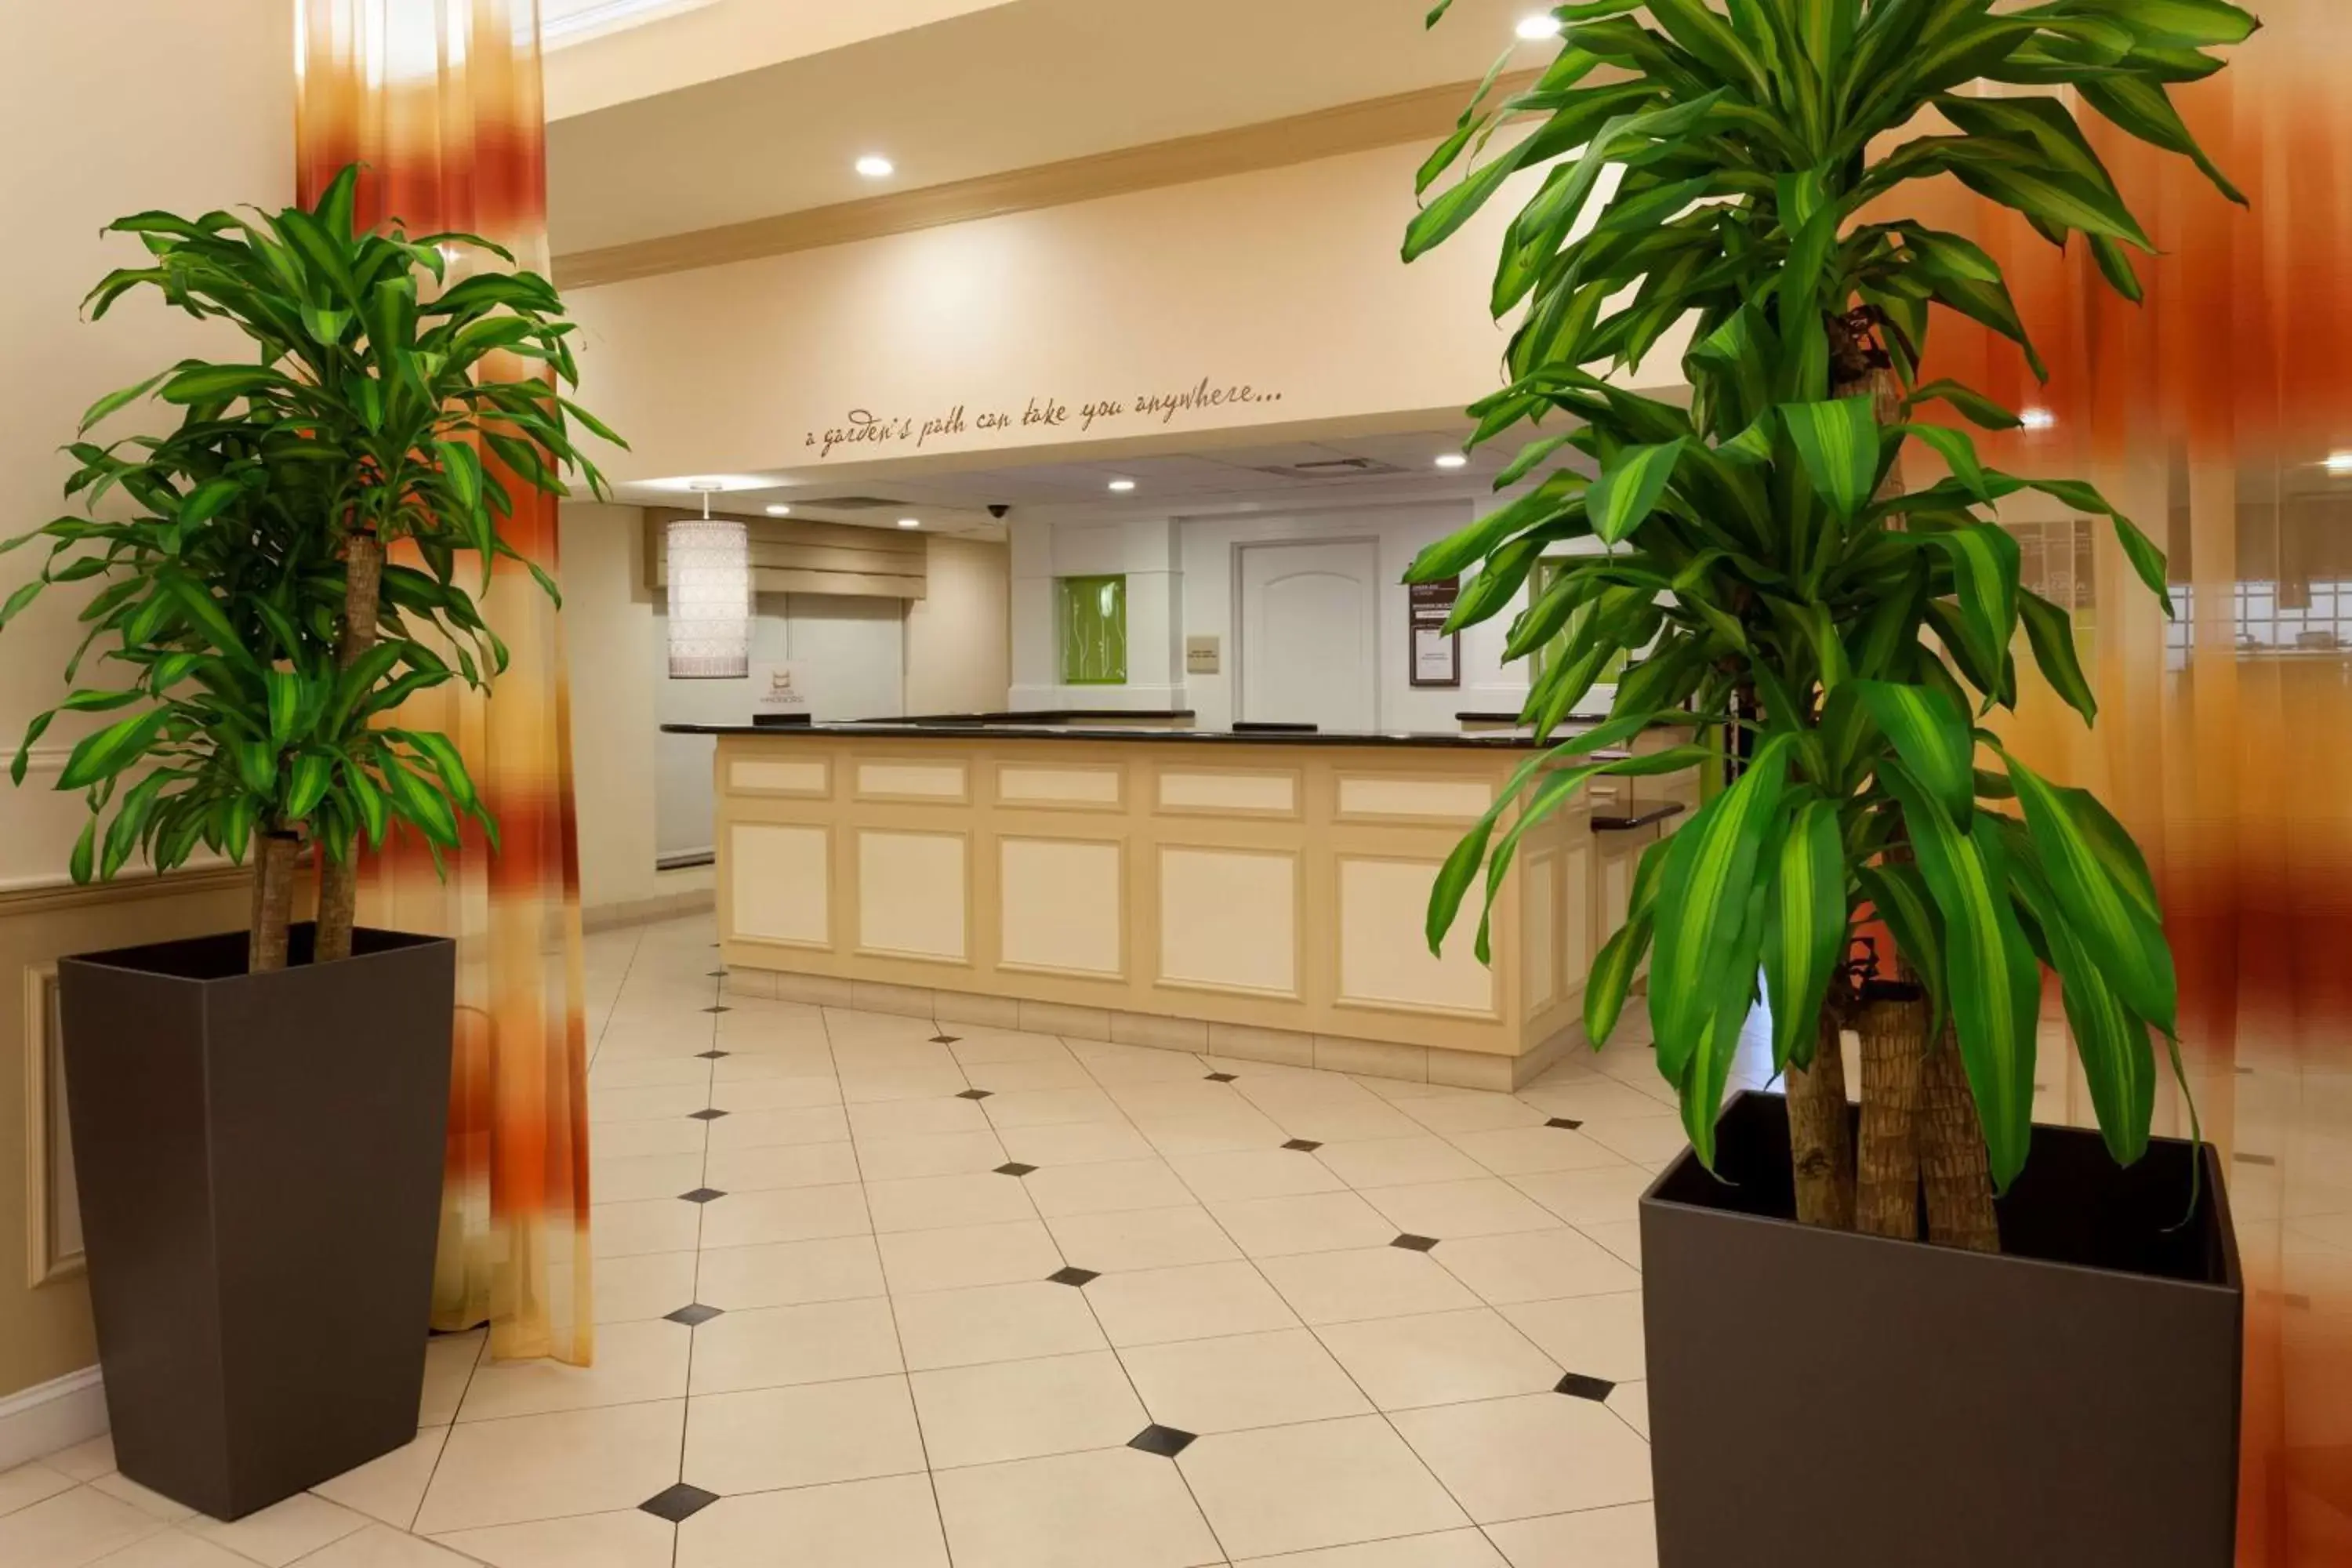 Lobby or reception, Lobby/Reception in Hilton Garden Inn Gainesville